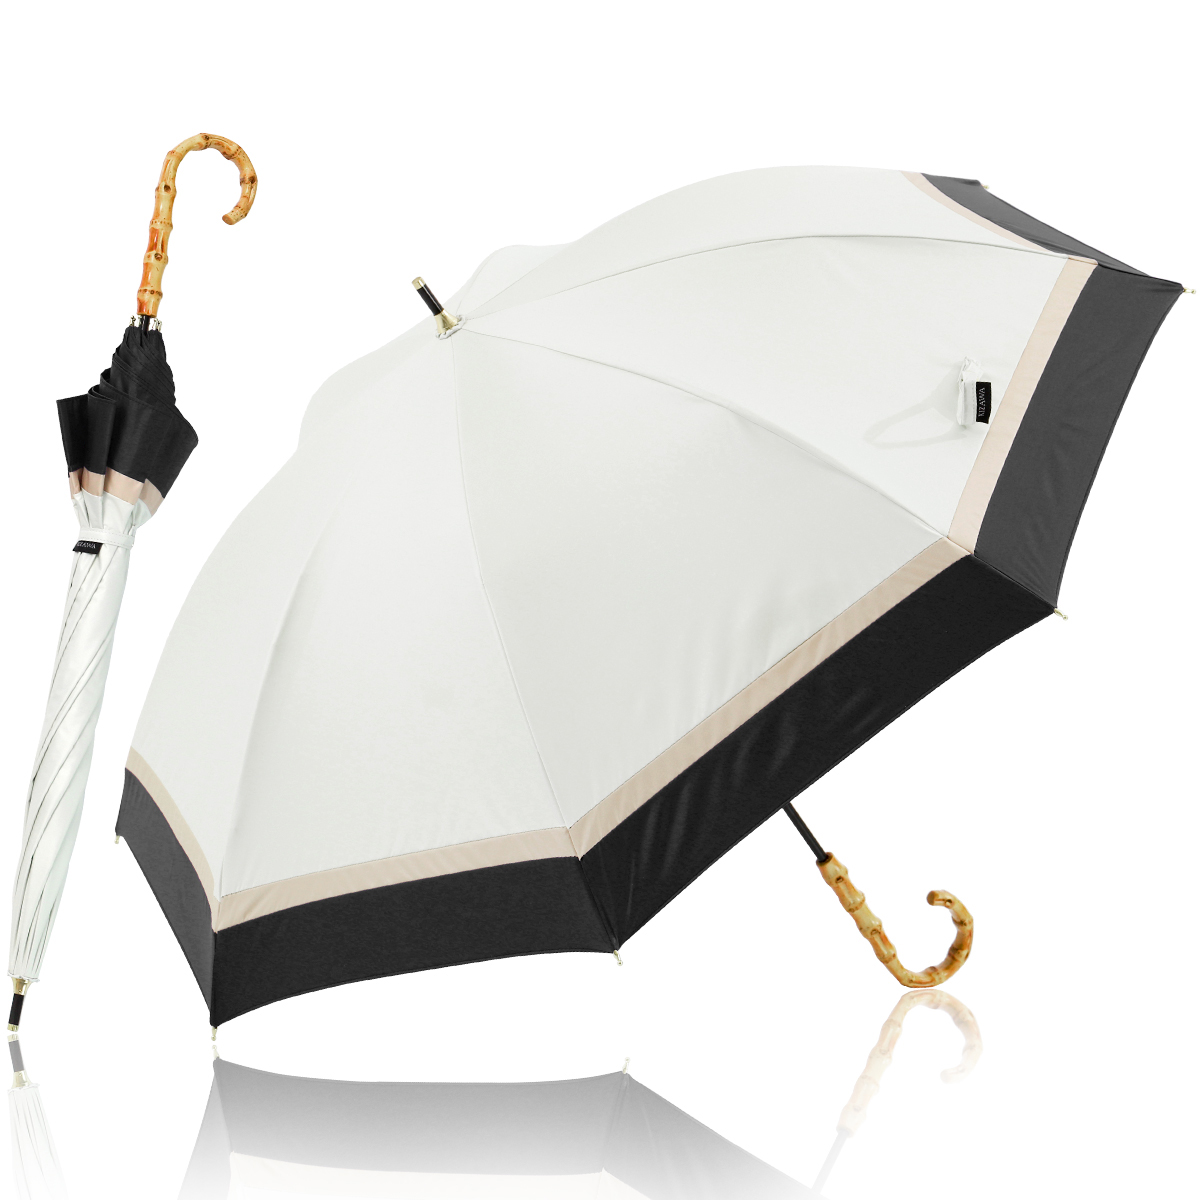 日傘 完全遮光 長傘 UVカット 100%遮光 紫外線対策 軽量 熱中症対策 晴雨兼用 大きい バンブー おしゃれ かわいい 贈り物 プレゼント